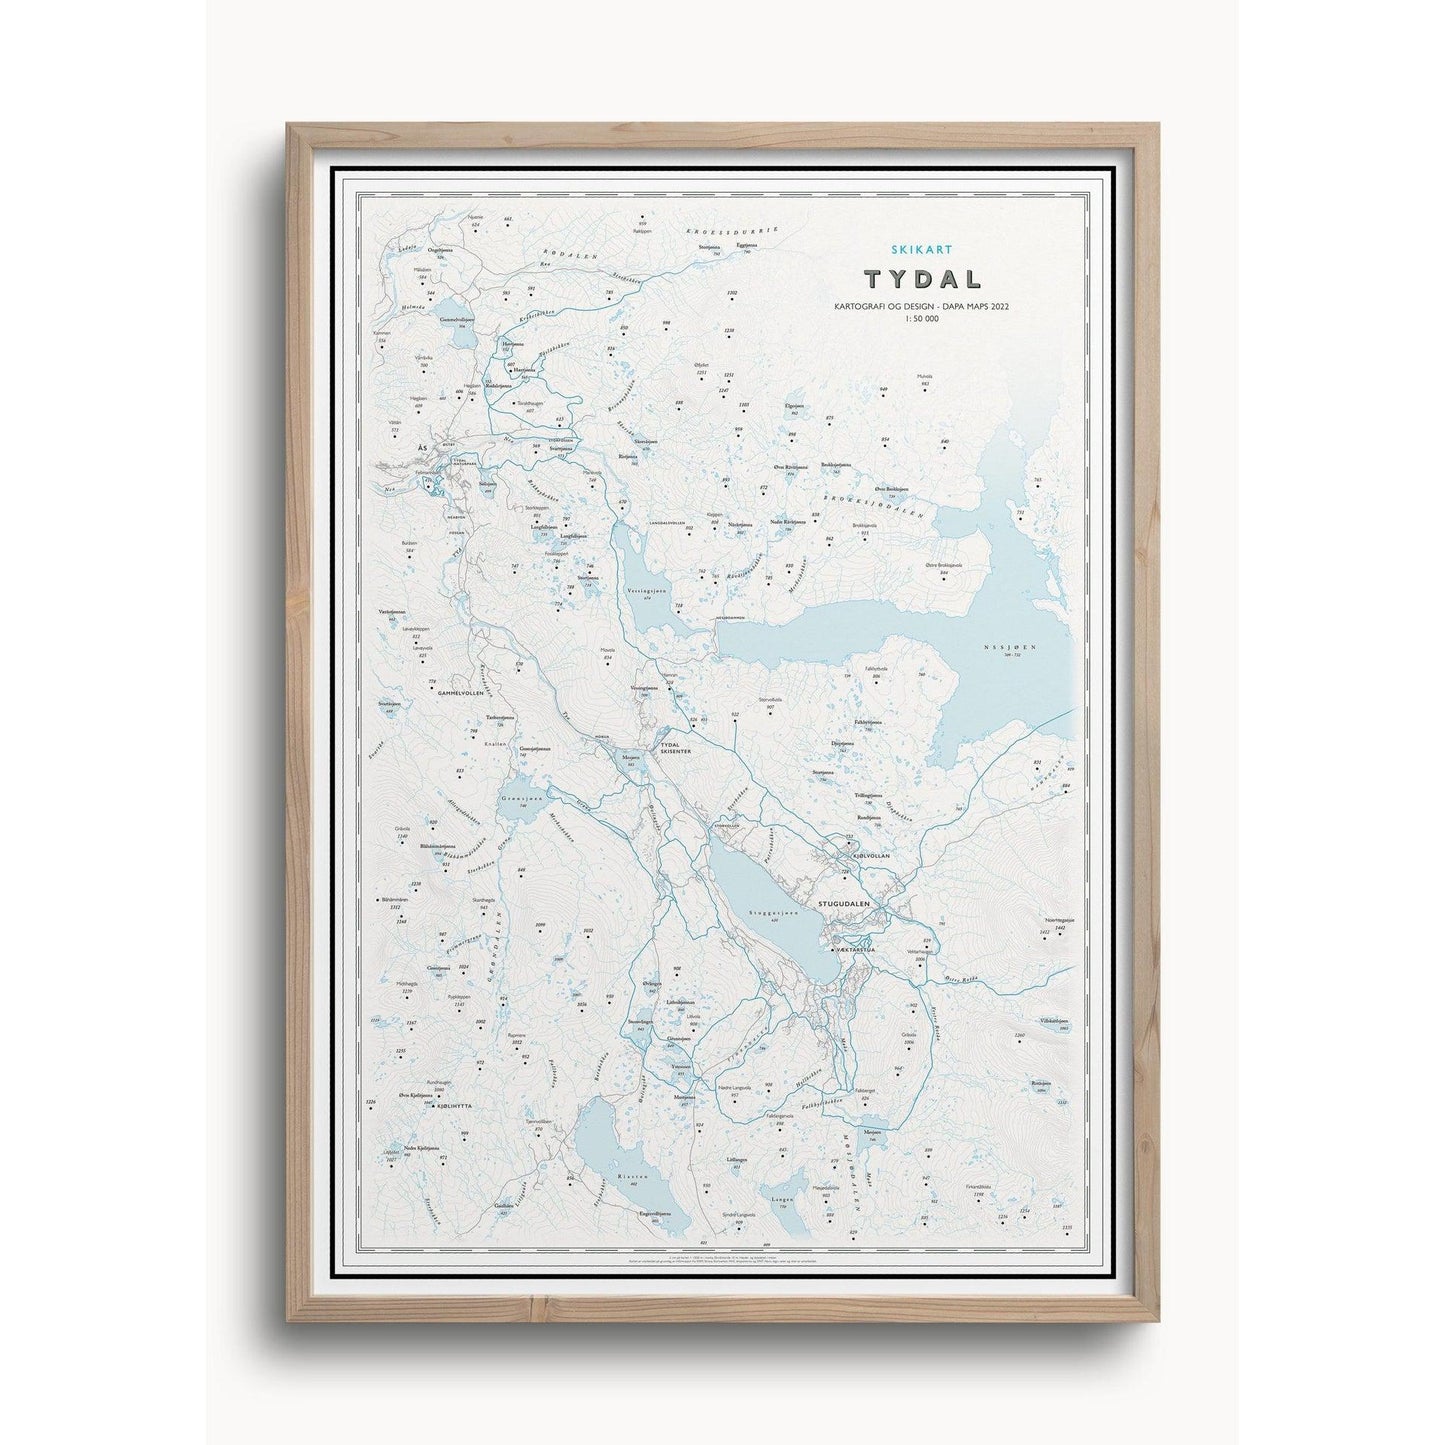 Skikart Tydal-Maps-Dapa Maps-Hyttefeber